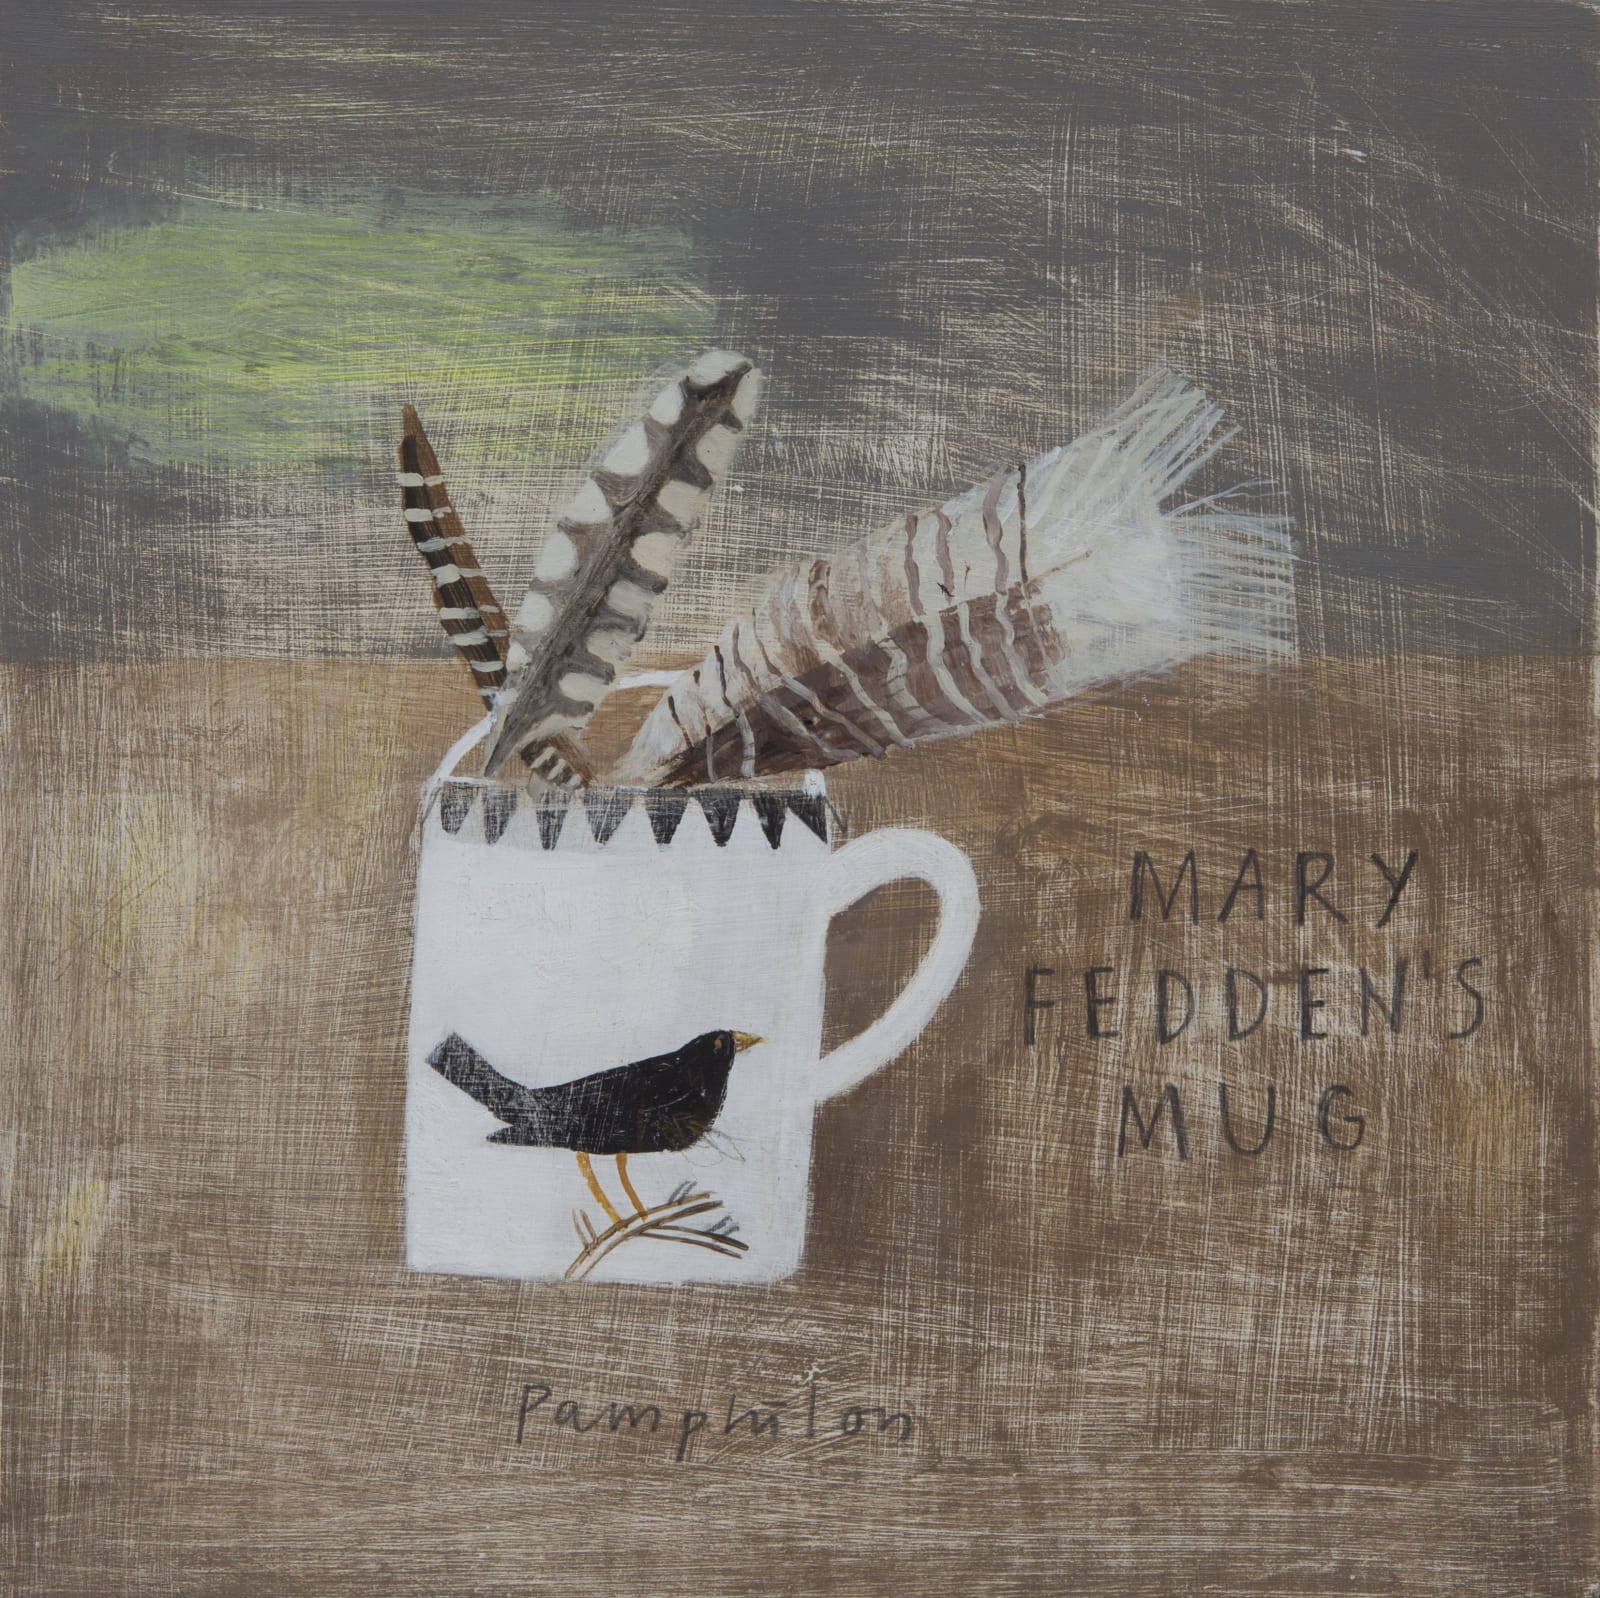 Elaine Pamphilon, Mary Fedden's Mug with Feathers